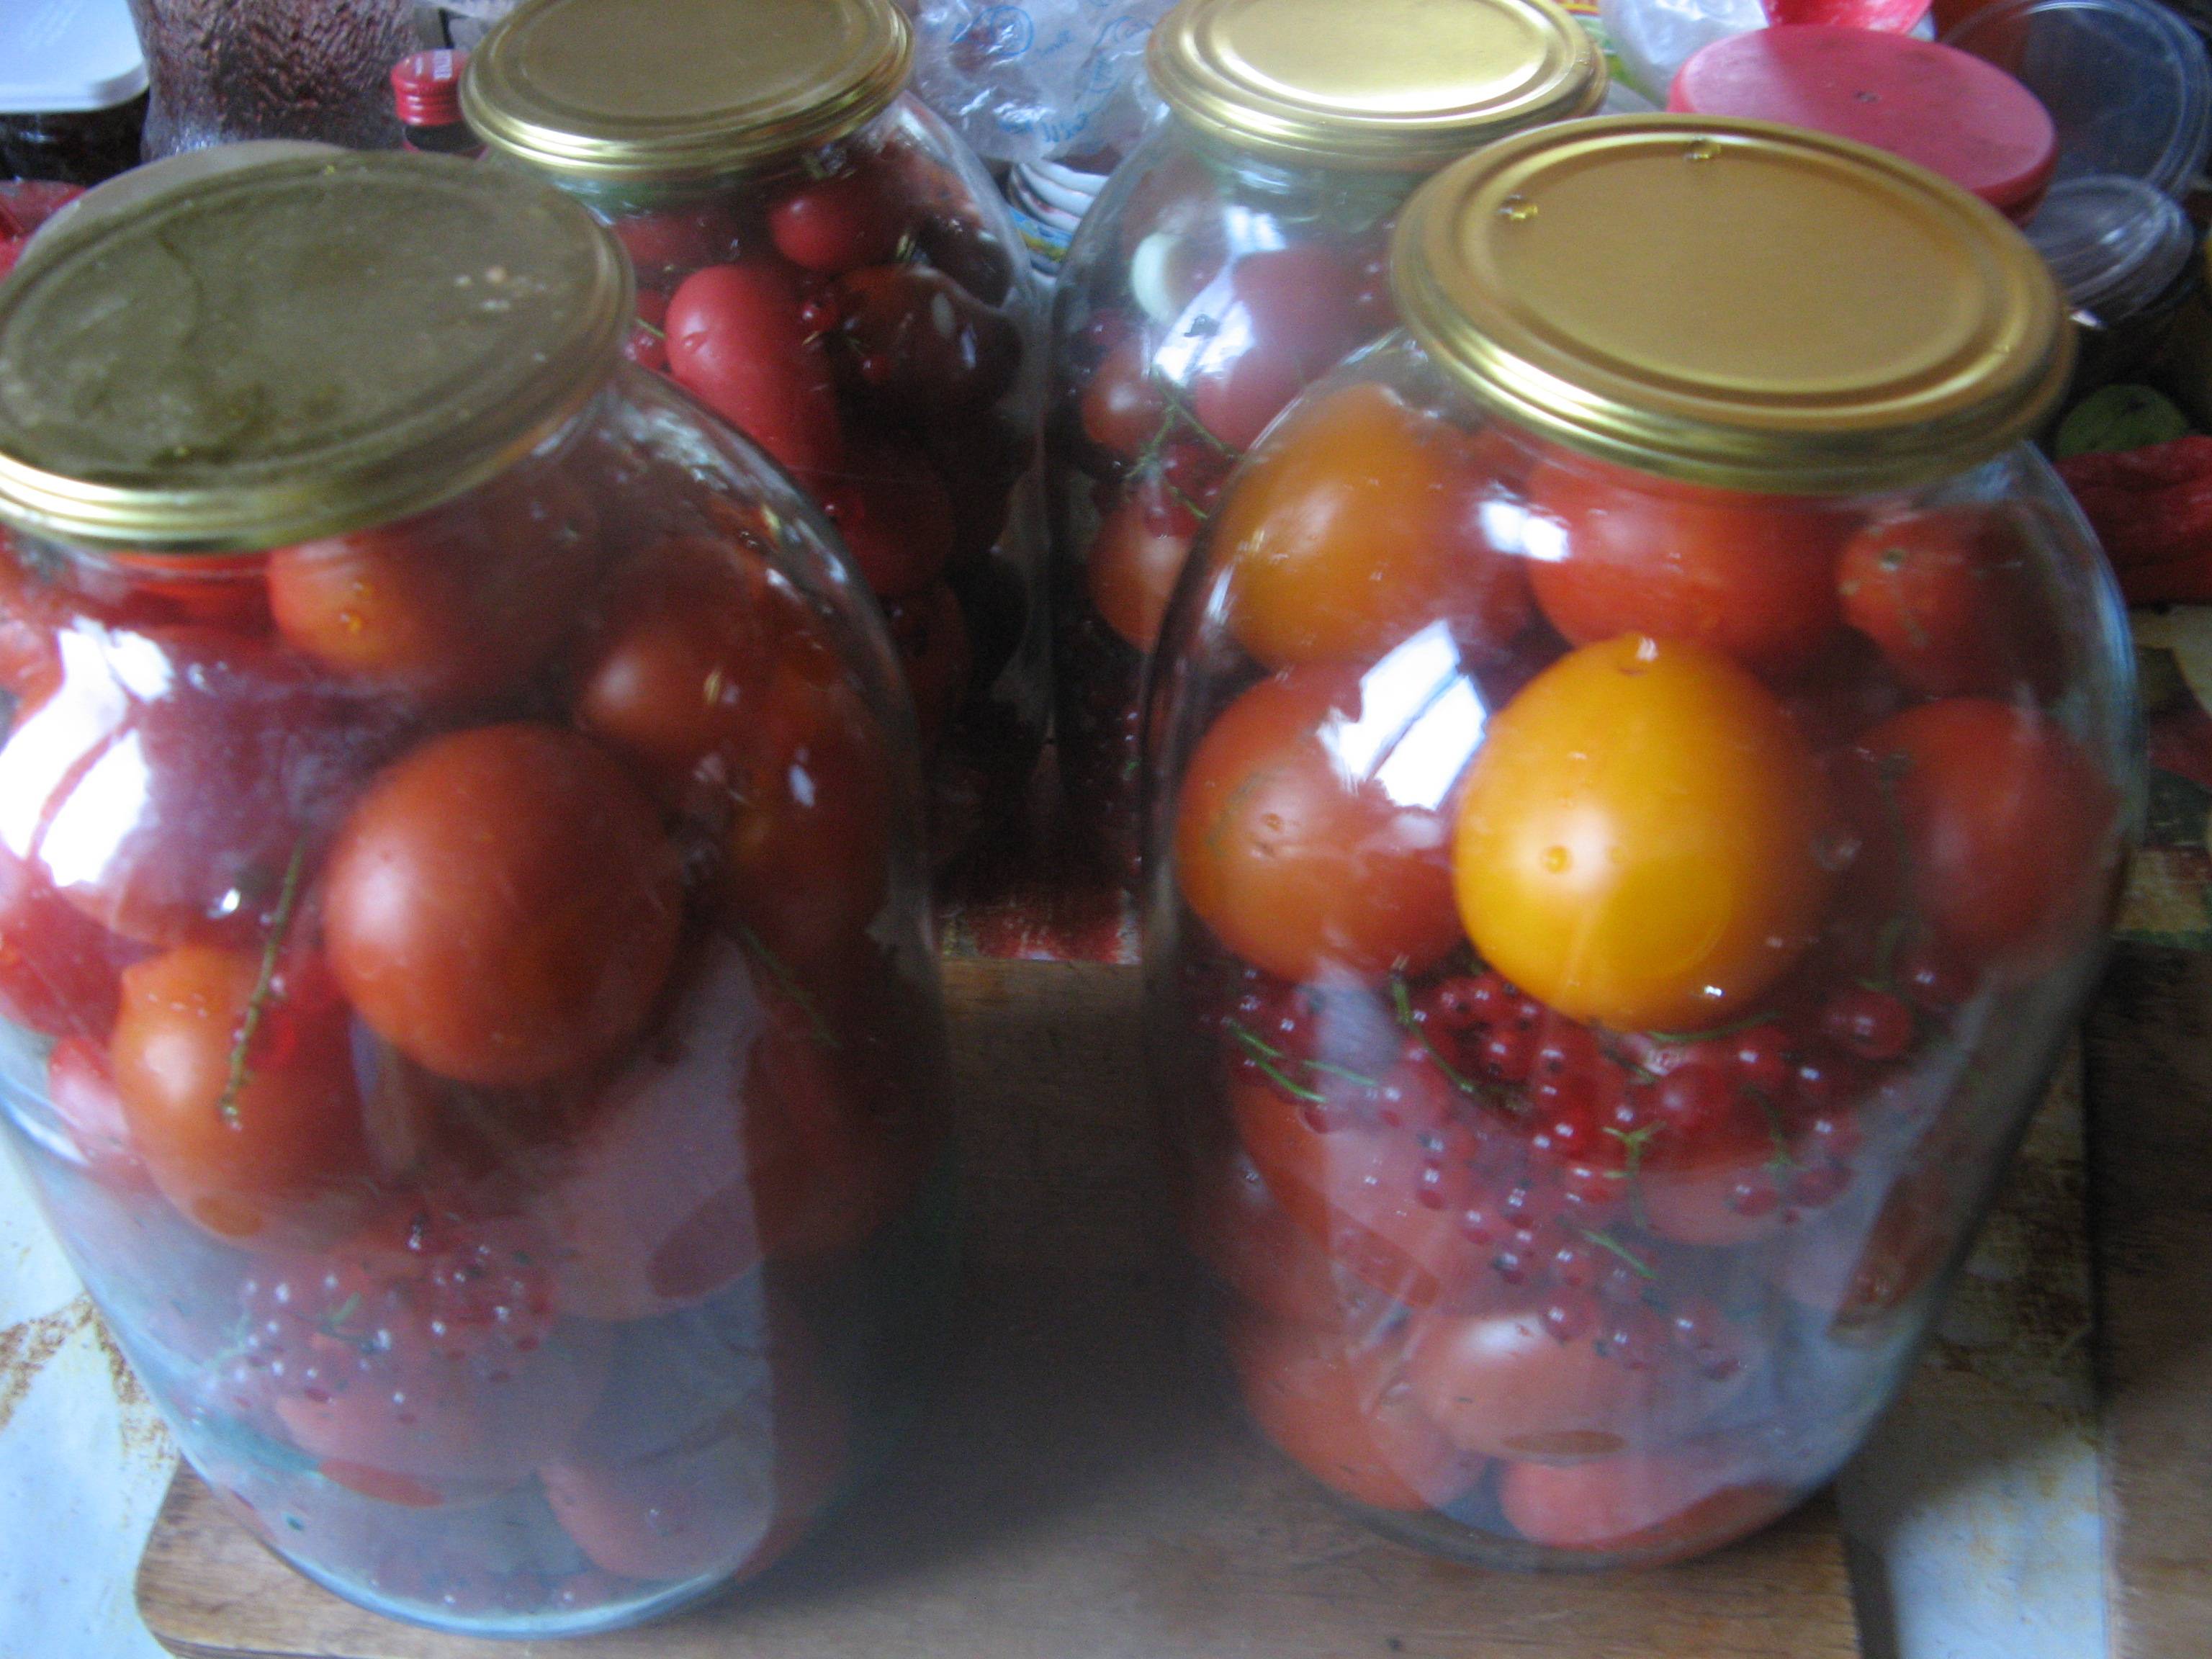 Рецепты маринования помидоров с красной смородиной на зиму, подготовка ингредиентов и условия хранения